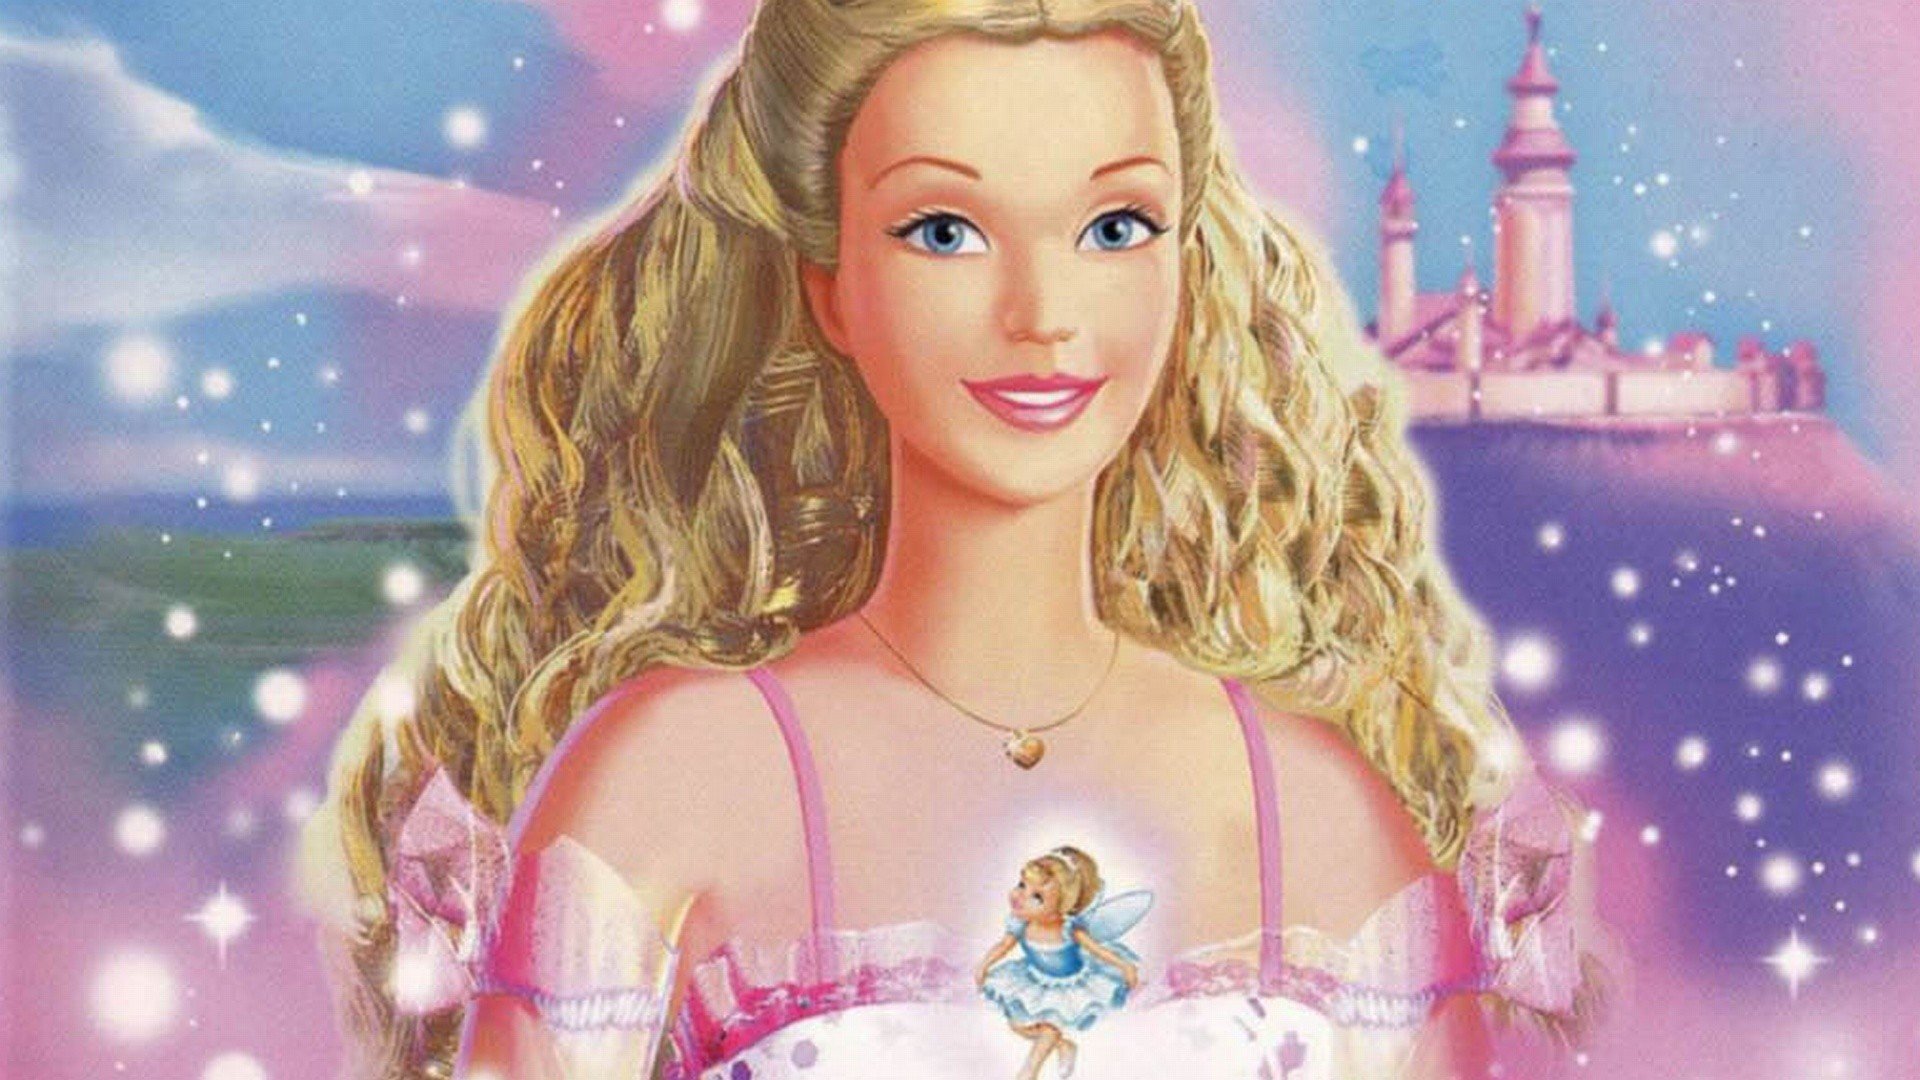 ბარბი მაკნატუნას სამყაროში / Barbie in the Nutcracker ქართულად